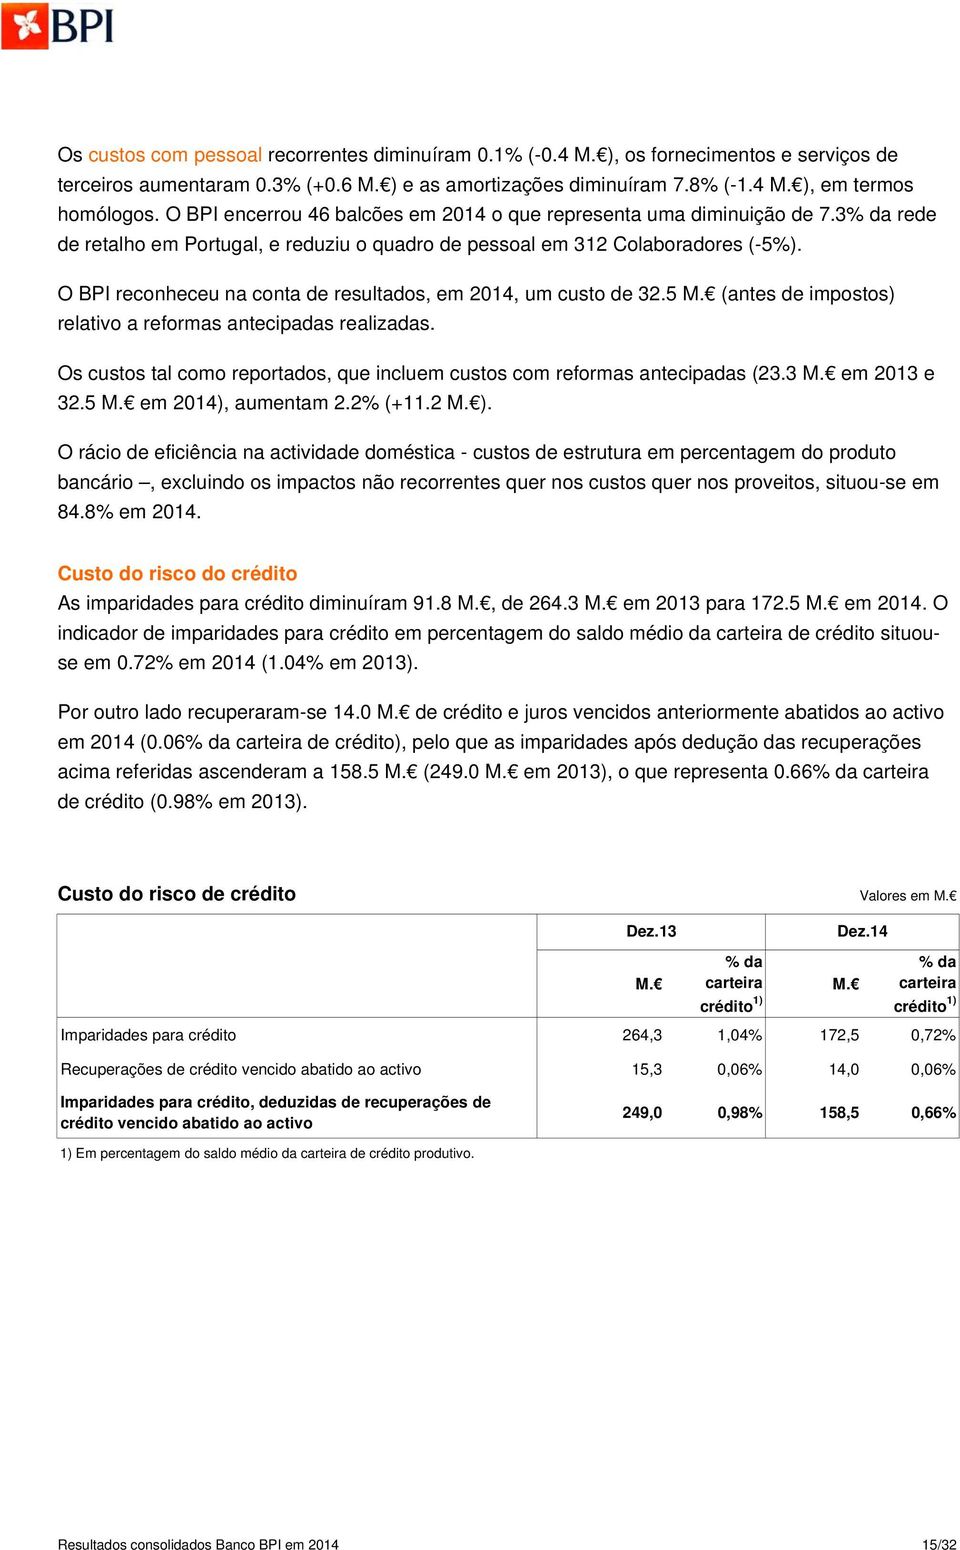 O BPI reconheceu na conta de resultados, em 2014, um custo de 32.5 M. (antes de impostos) relativo a reformas antecipadas realizadas.